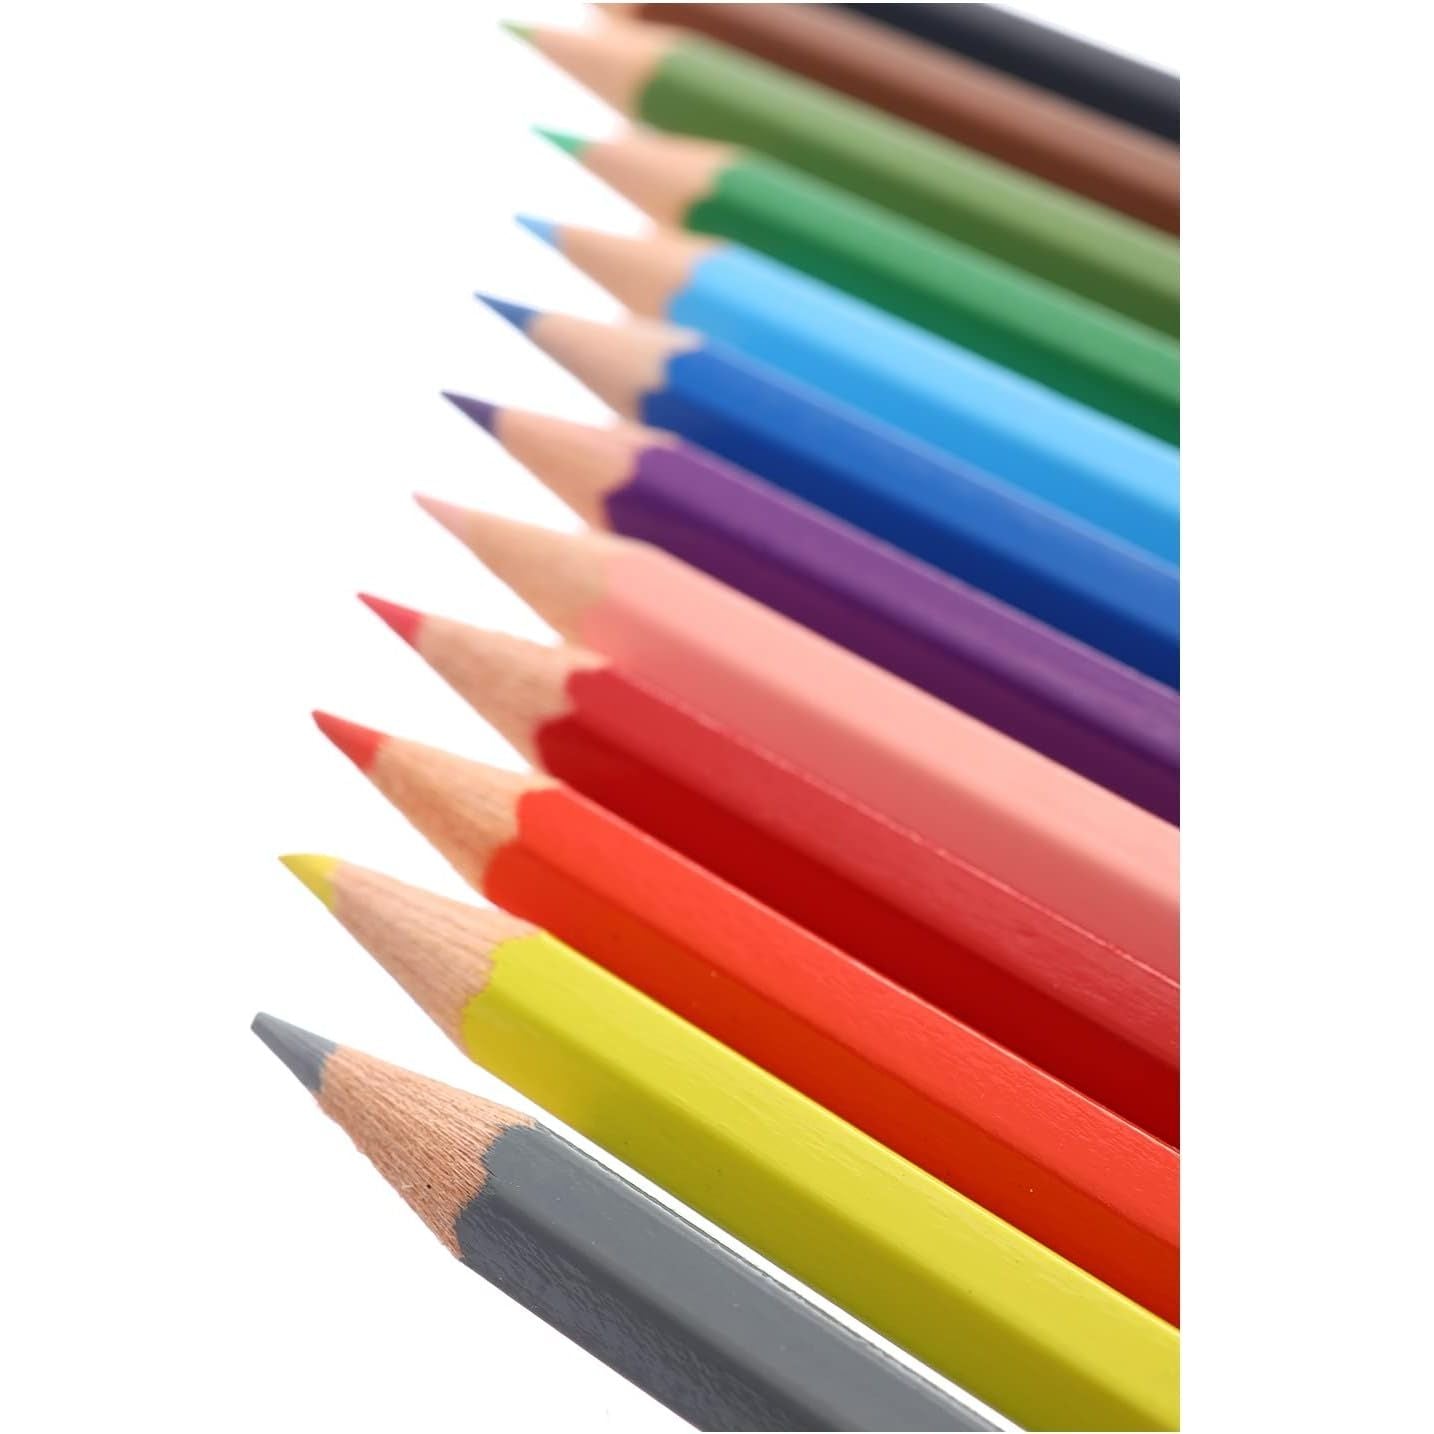 Faber Castell Wood Long Buntstifte Color Pencils 12 Color Pencils - Multi Color